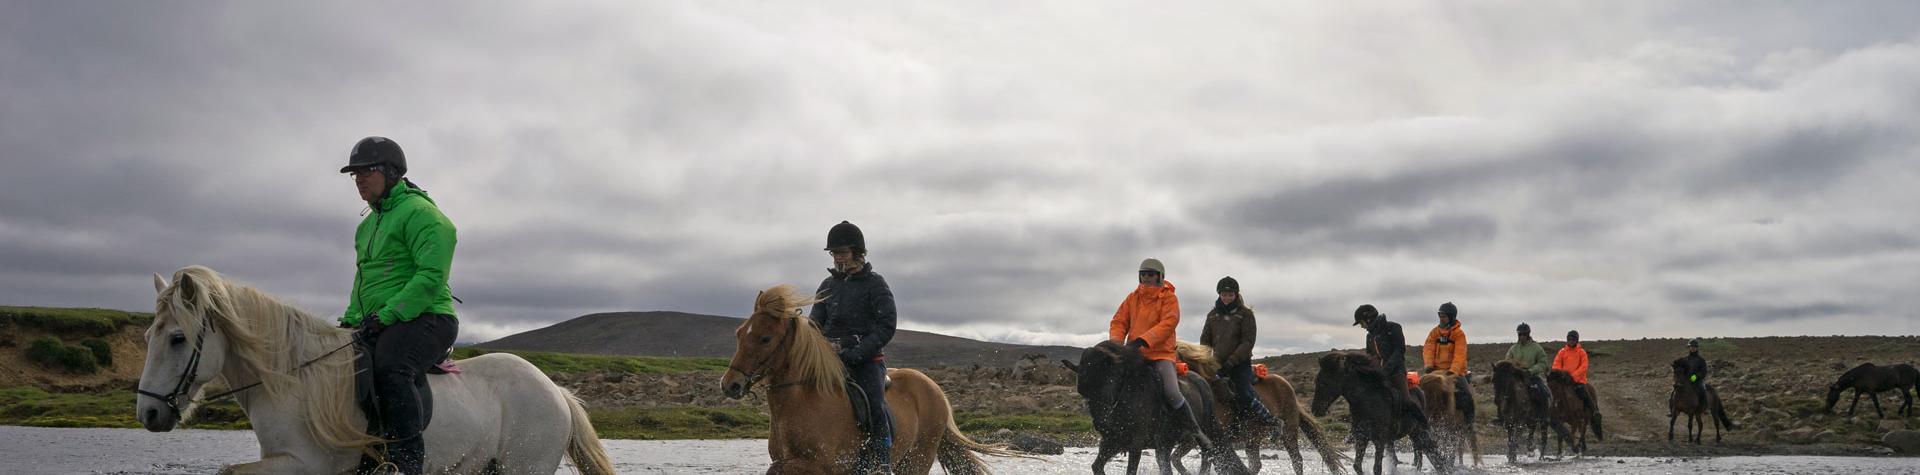 Ridning på Islandshästar, Island.